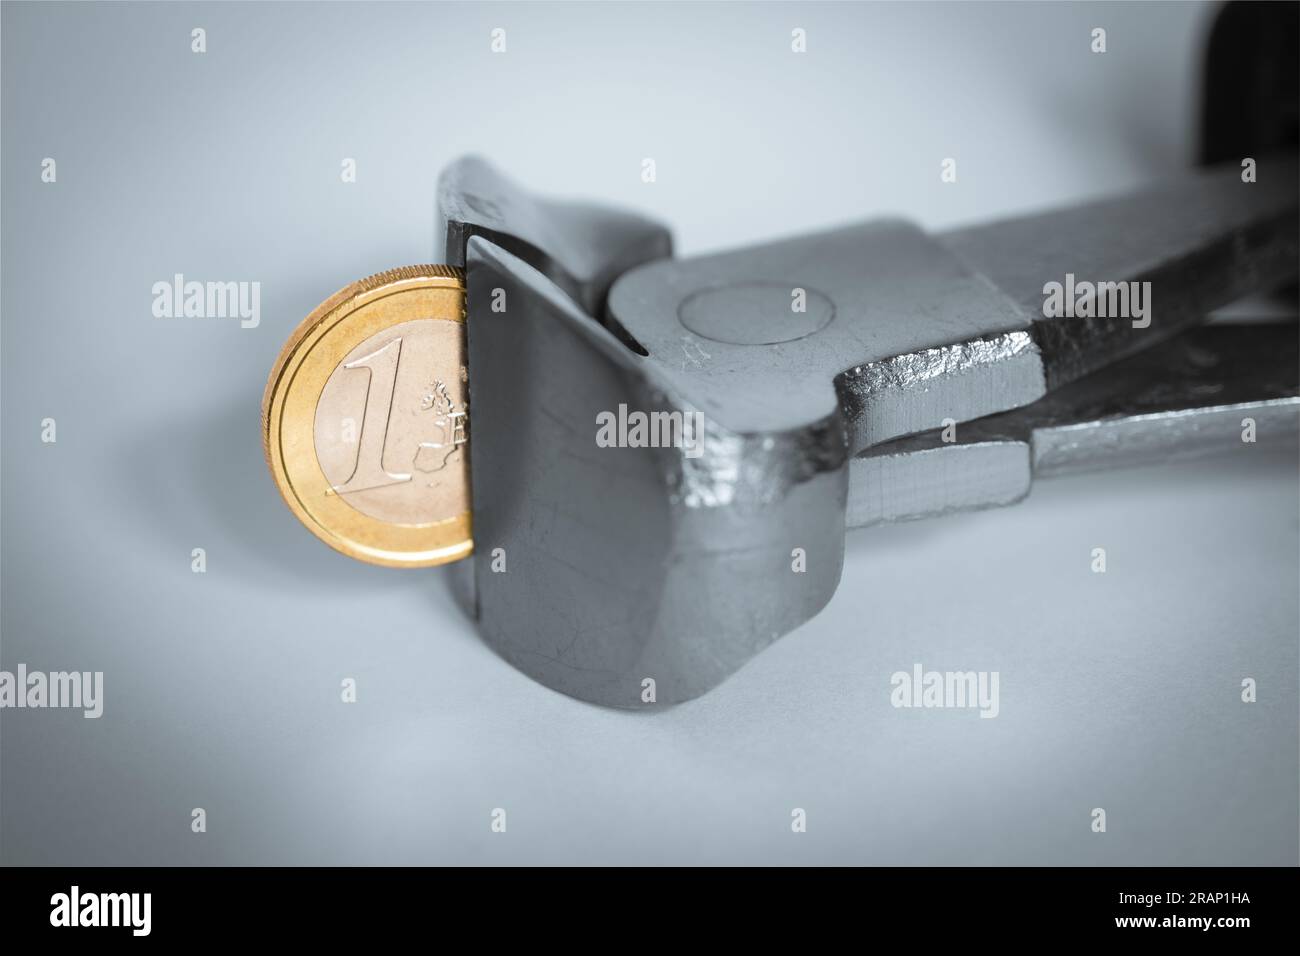 Eine Zange, die in eine Euro-Münze beißt, das Konzept der wirtschaftlichen Inflation, die die Kaufkraft verringert. Stockfoto